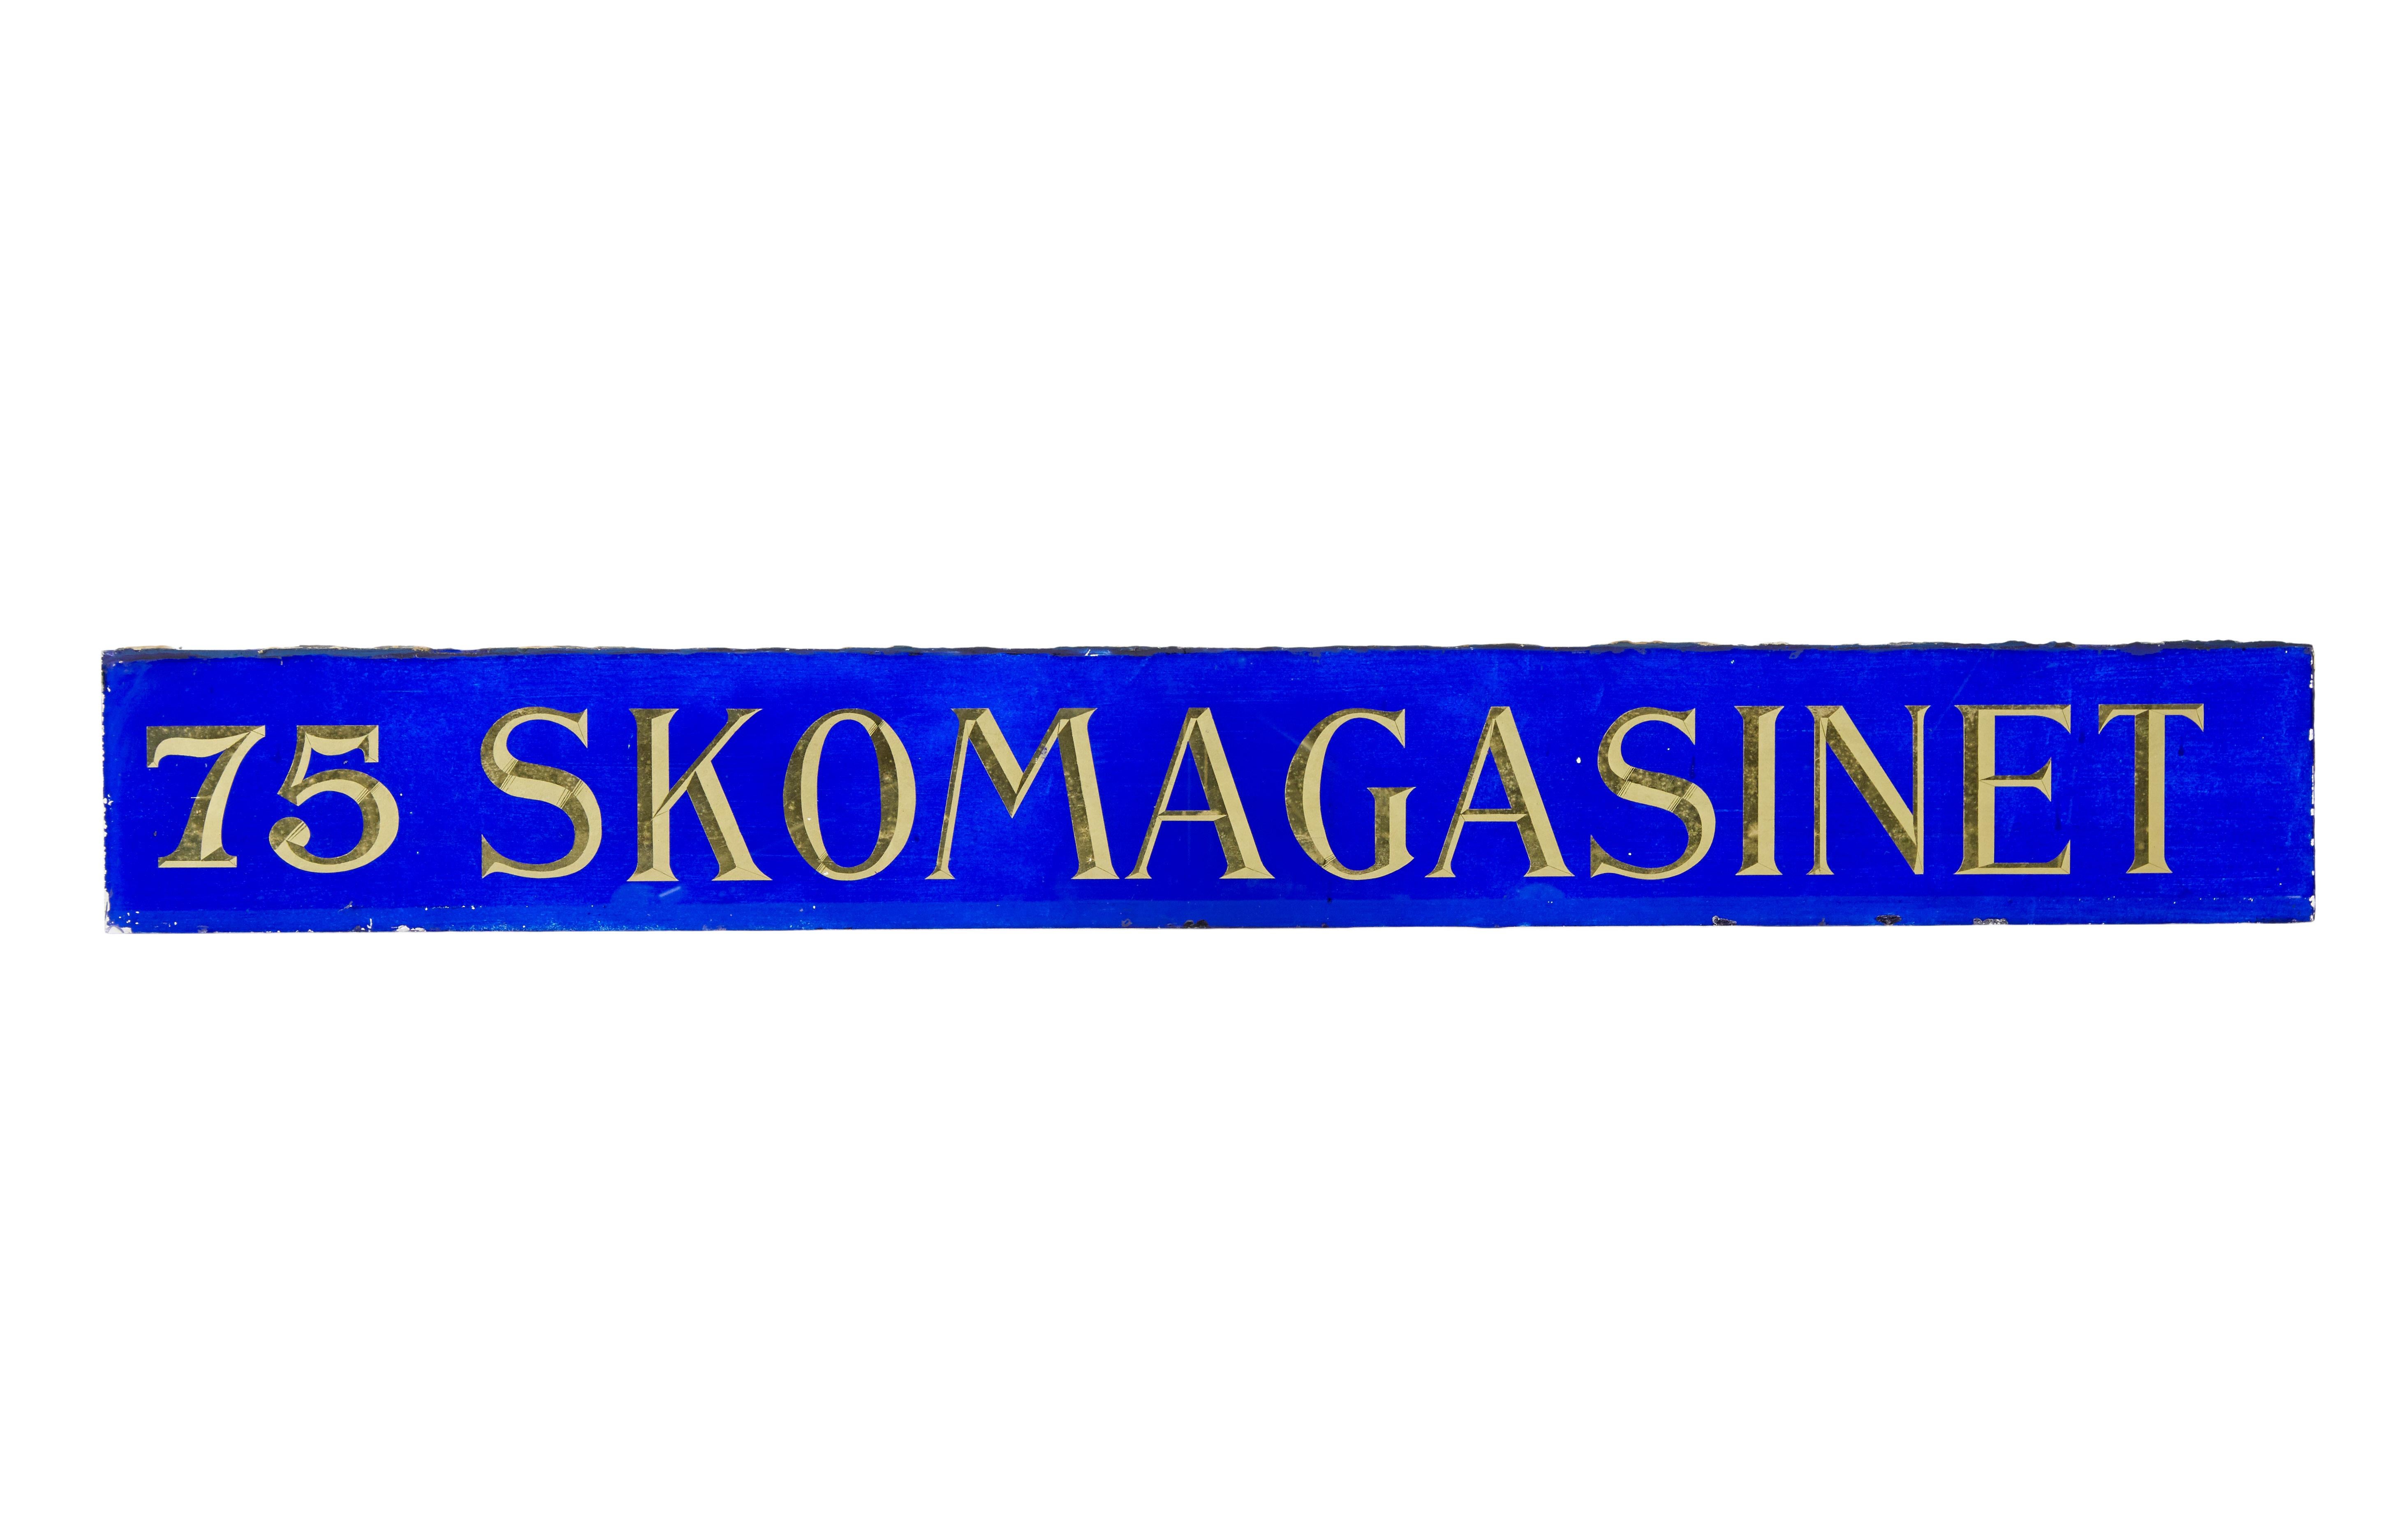 Enseigne de magasin de chaussures scandinave en verre bleu et or circa 1900

Magnifique panneau de signalisation de devanture de magasin en Suède, lettres biseautées dorées sur fond bleu. Jolie pièce décorative.

Il serait superbe rétroéclairé ou